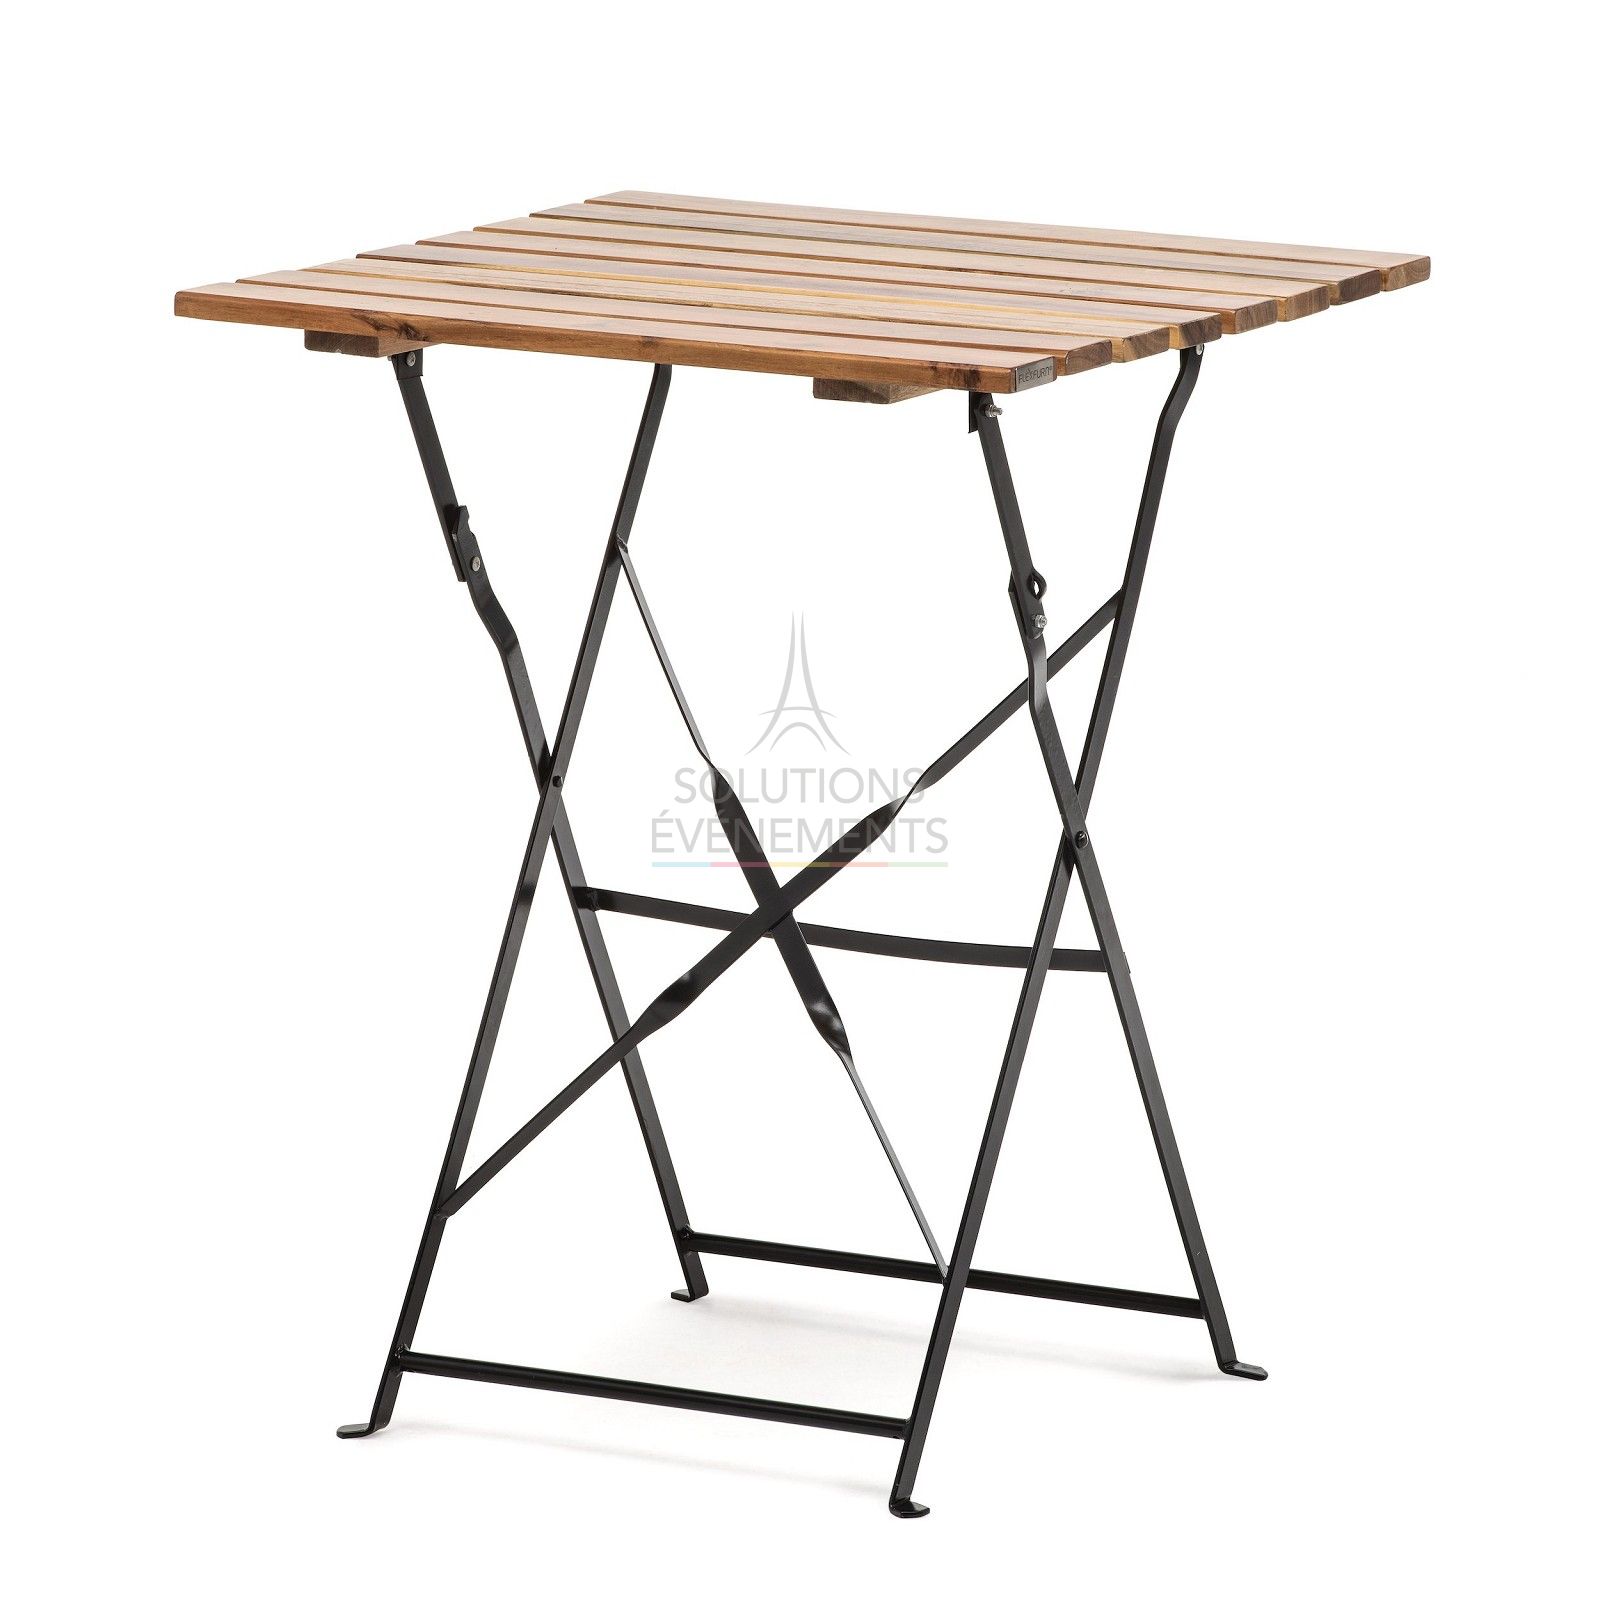 Table pliante en bois pour tous vos événements